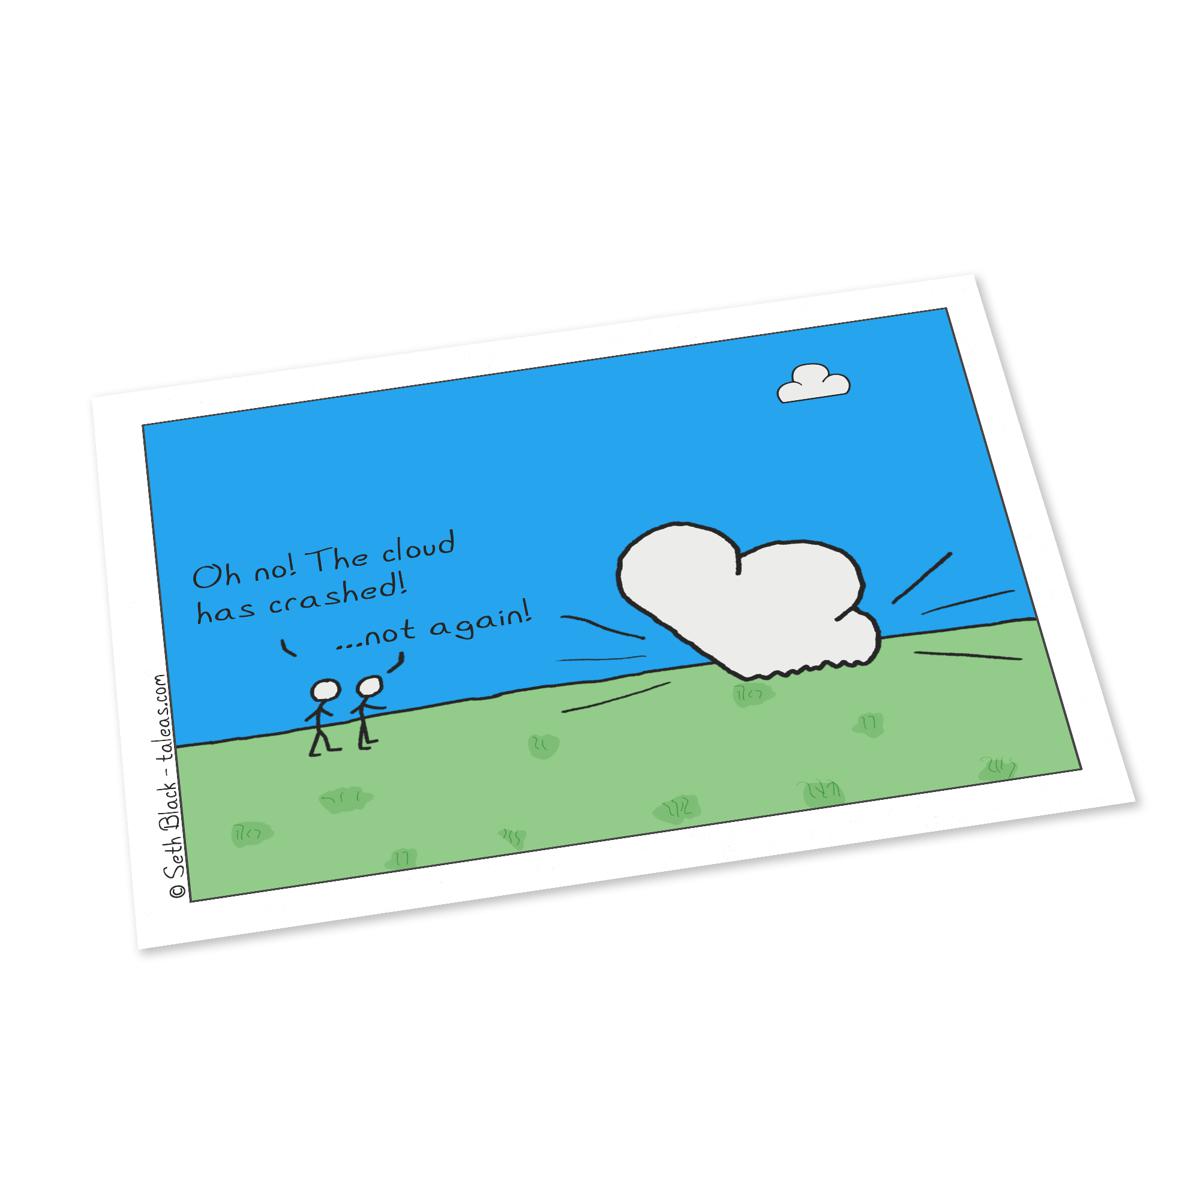 The Cloud Crashes Again Postcard 4X6 white